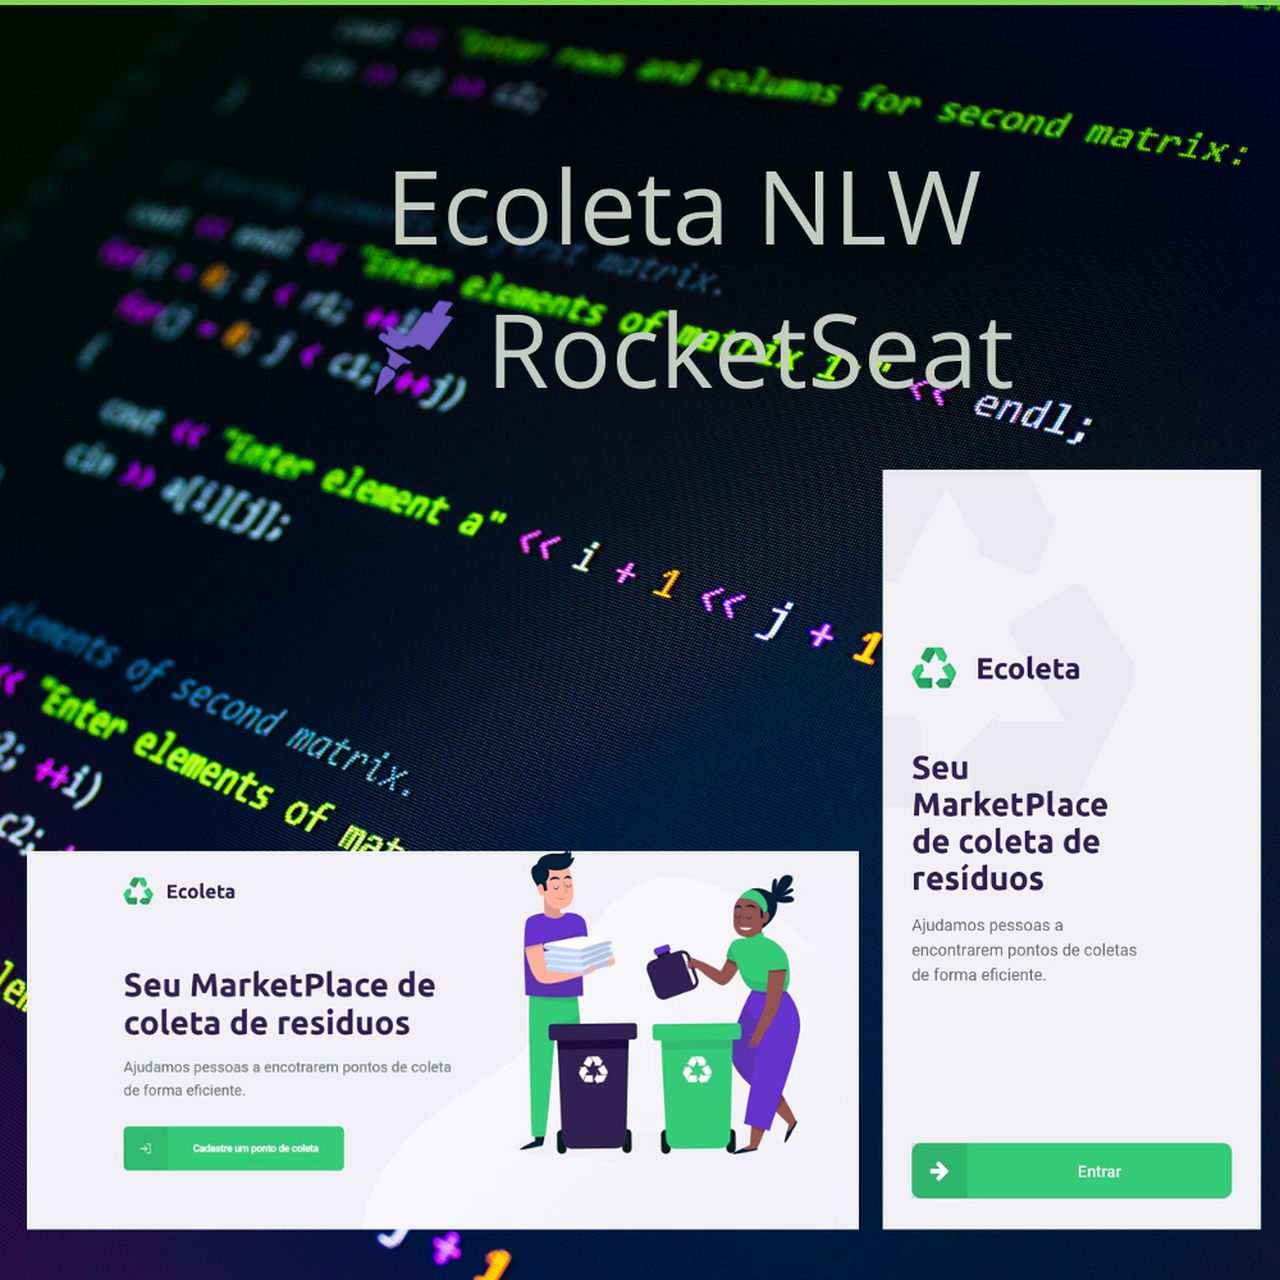 Ecoleta NLW RocketSeat_Easy-Resize.com (1).jpg